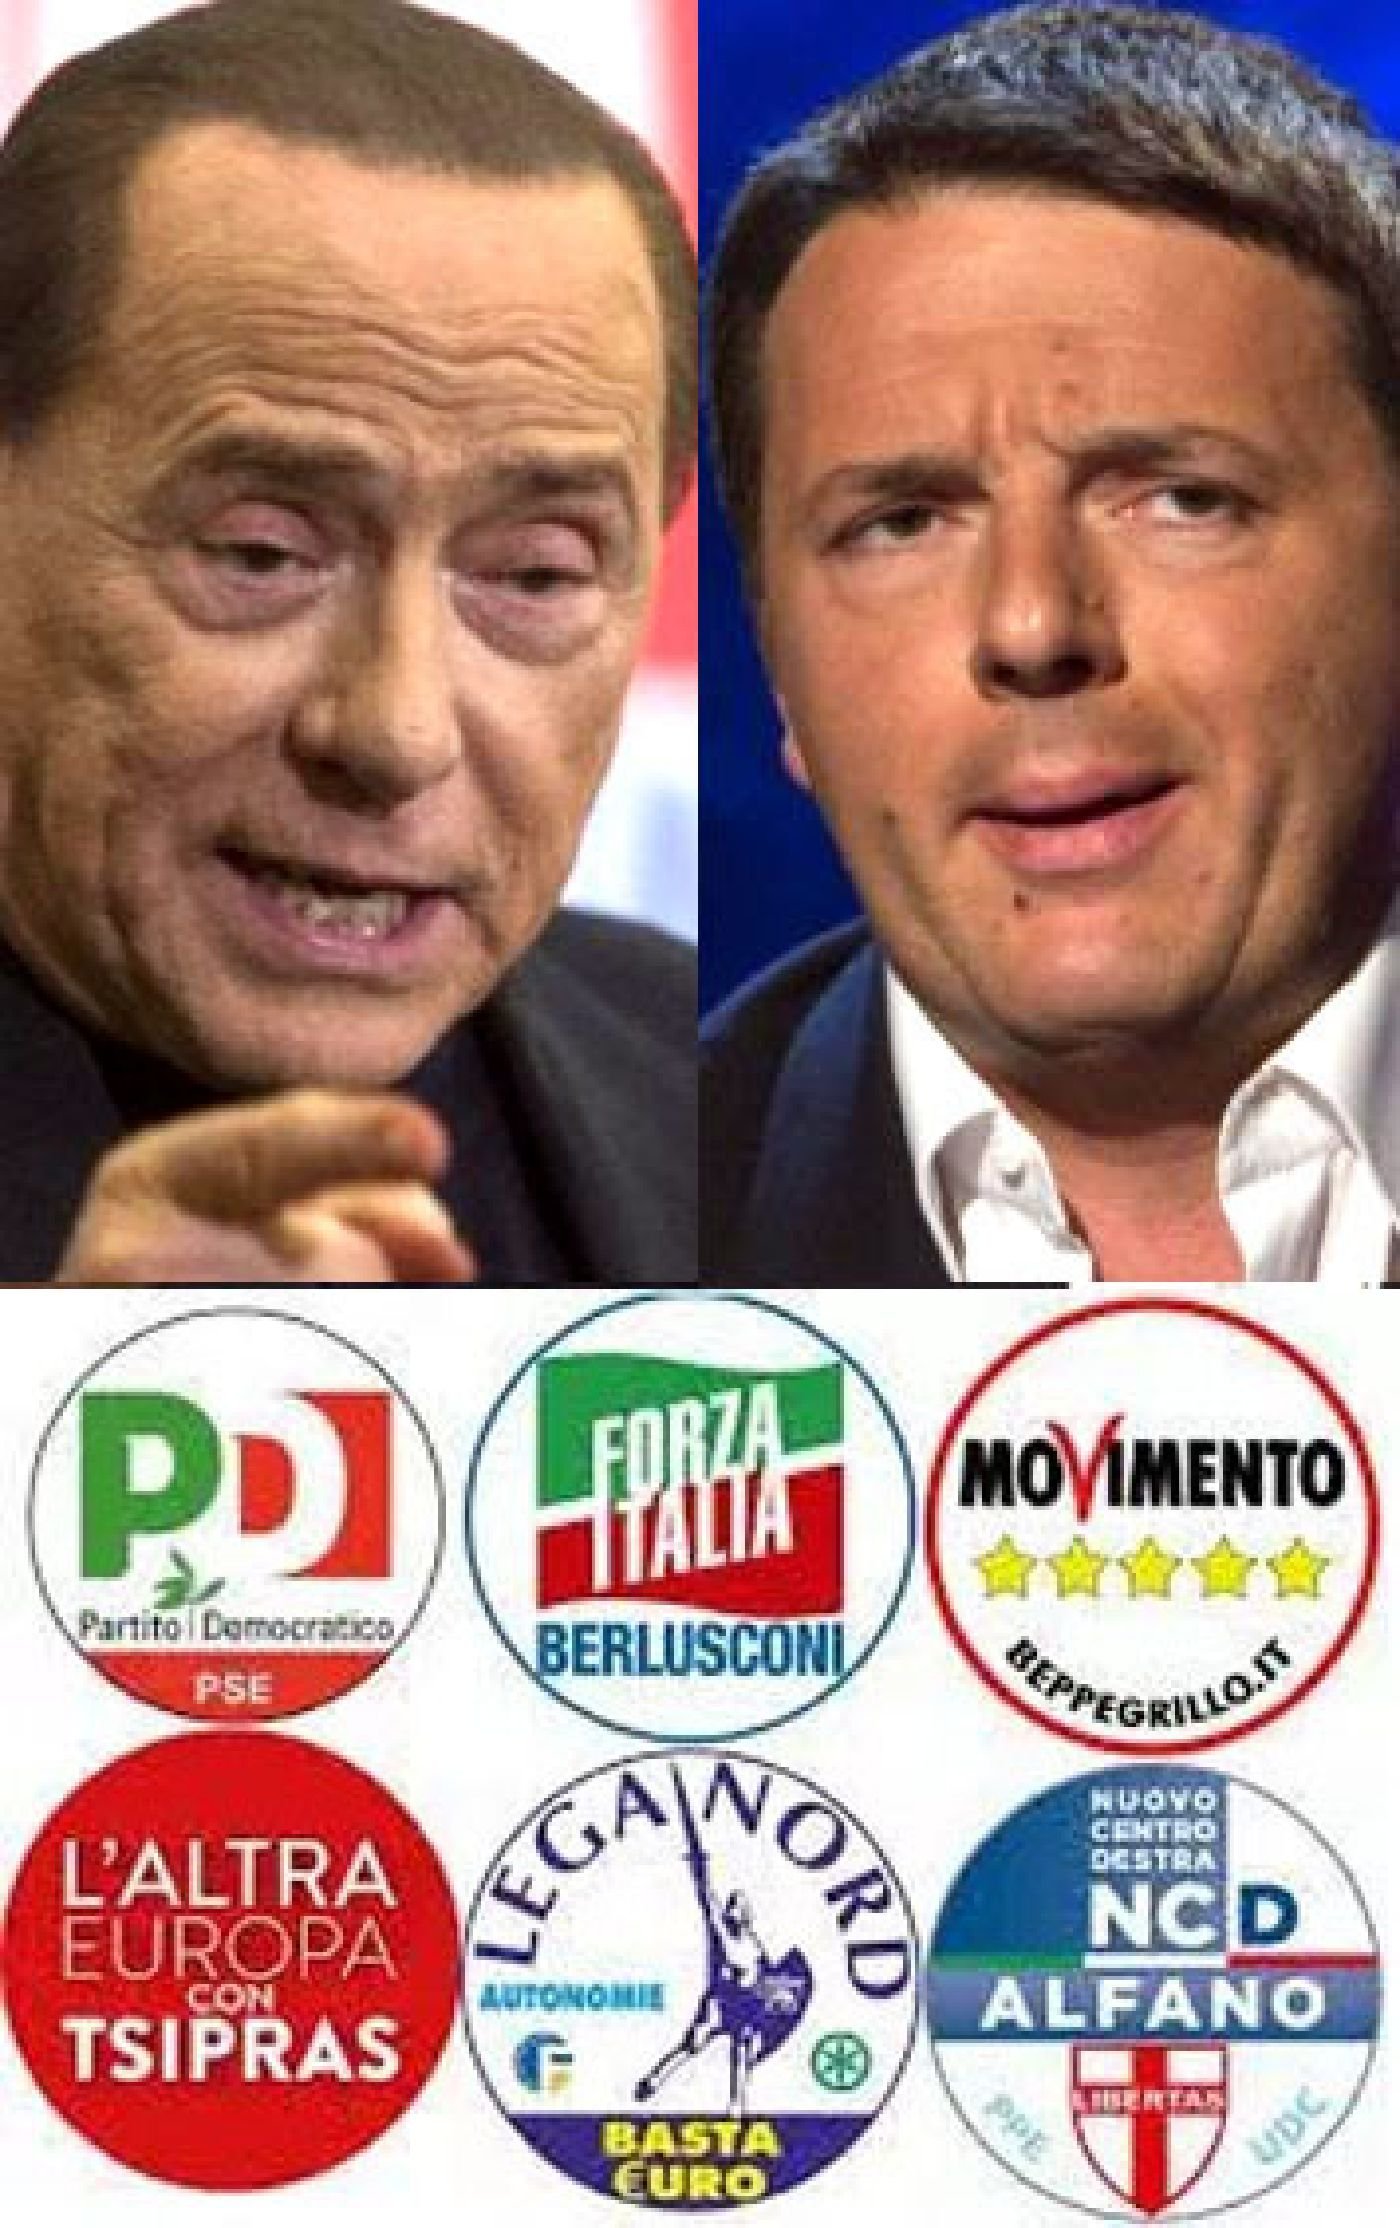 イタリアの政治・政党について